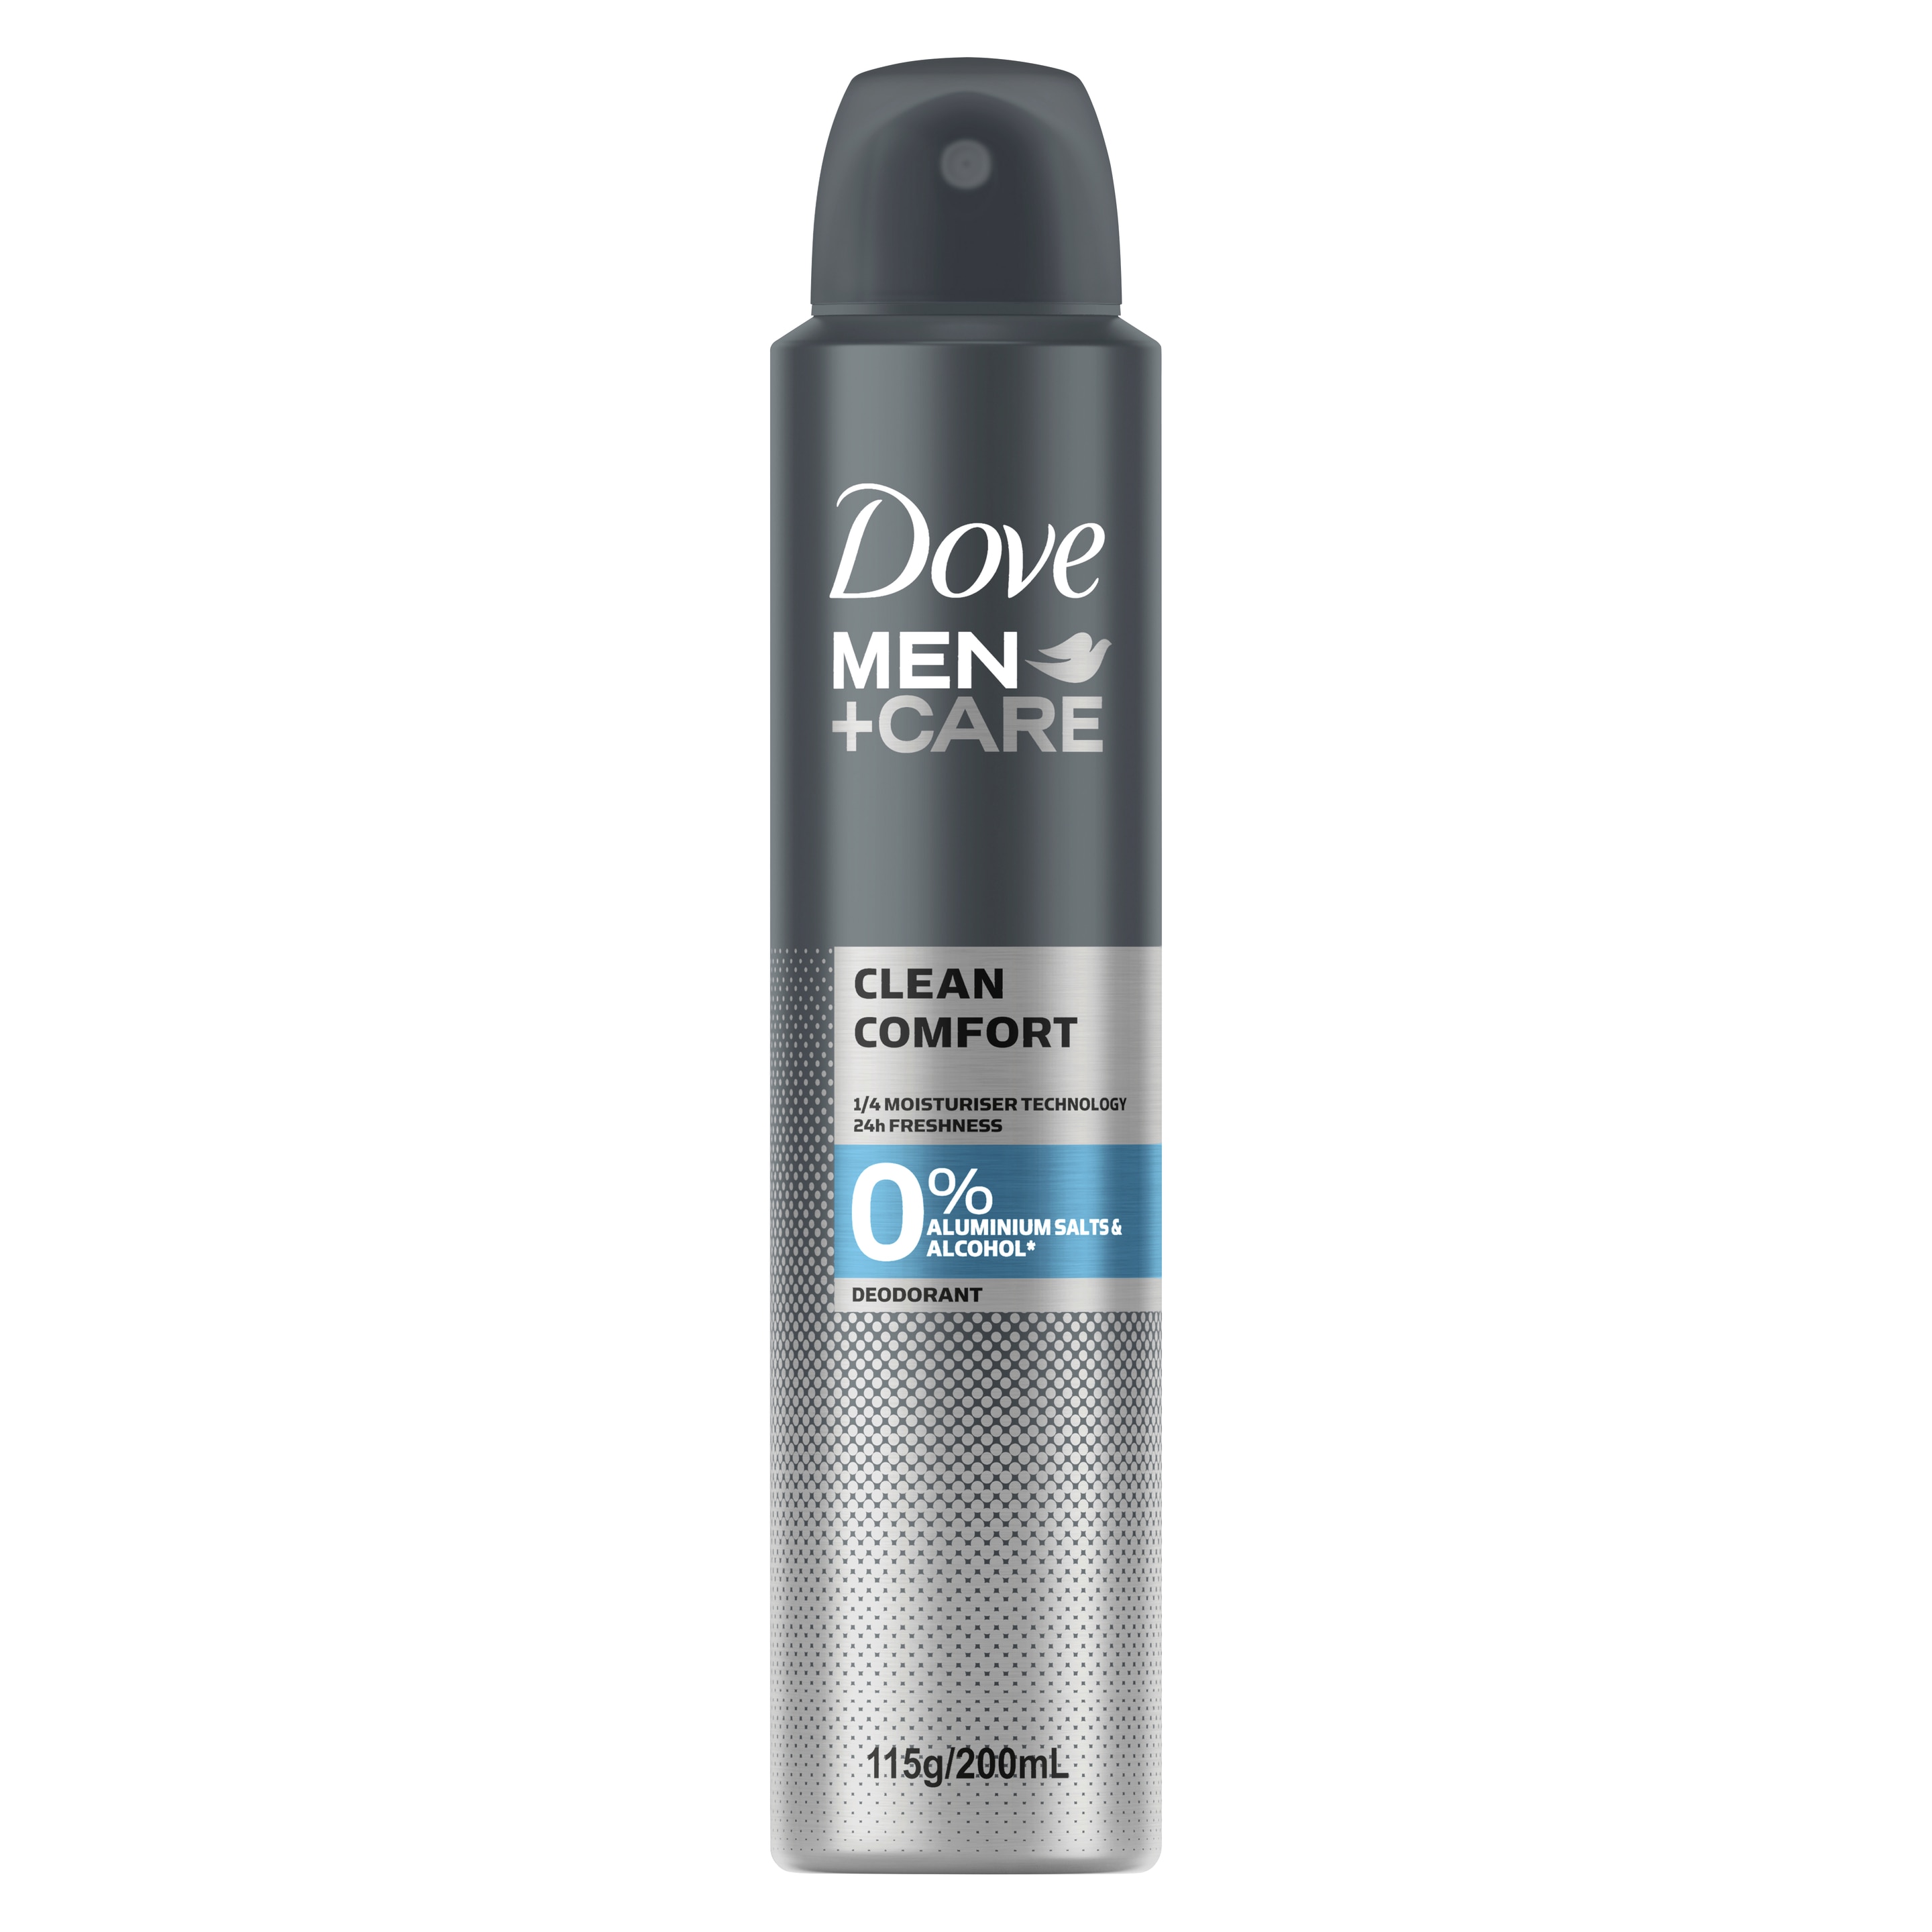 Dove Men+Care 0% Aluminium Aerosol Deodorant Clean Comfort 200mL